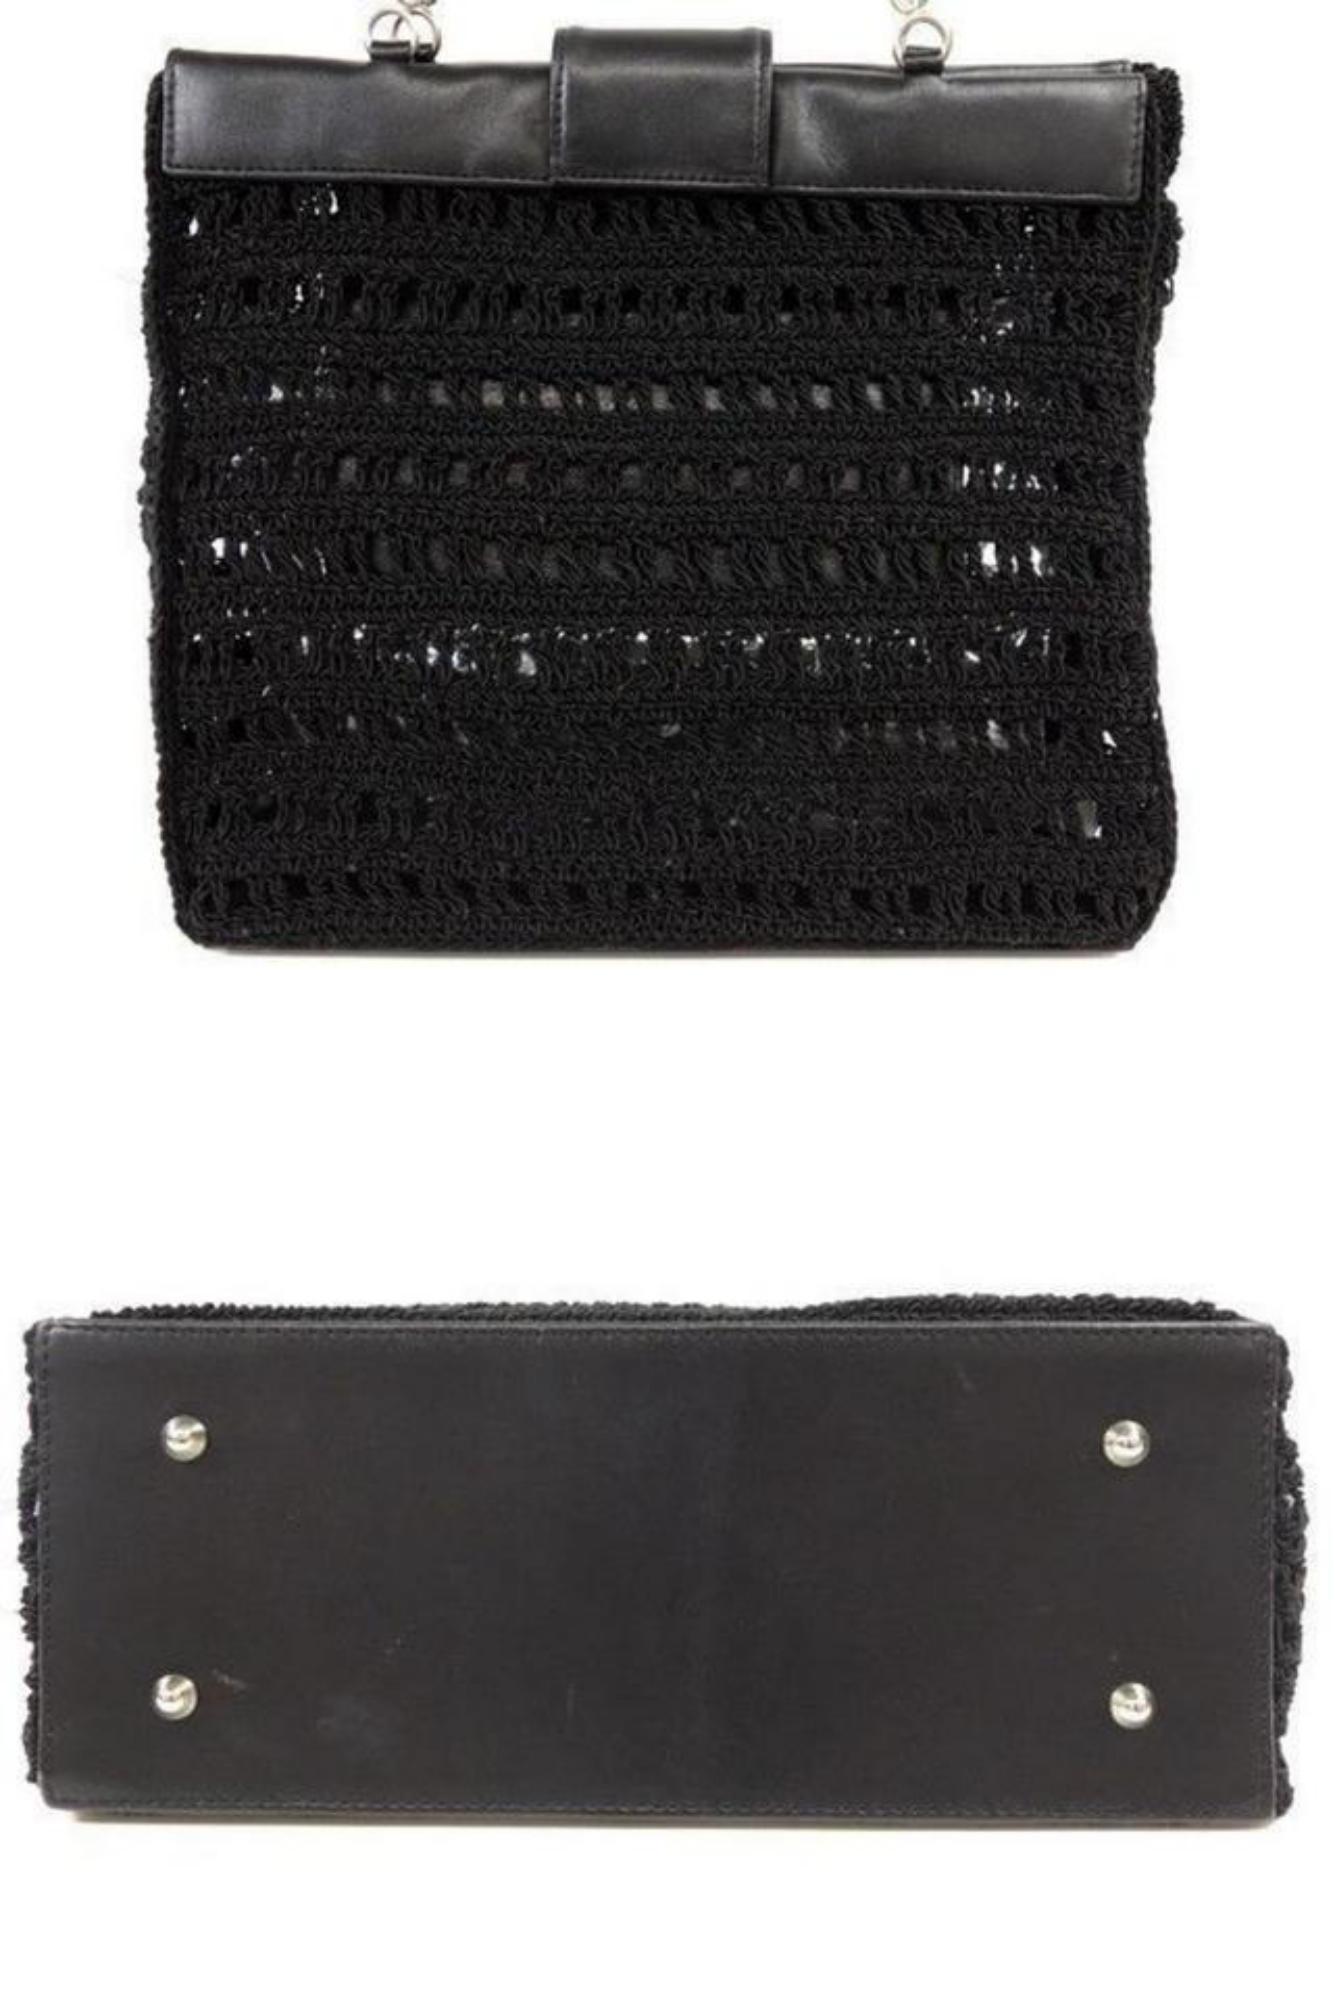 Chanel Supermodel (Ultra Rare) Woven Mesh Chain Tote 230512 Black Shoulder Bag For Sale 3